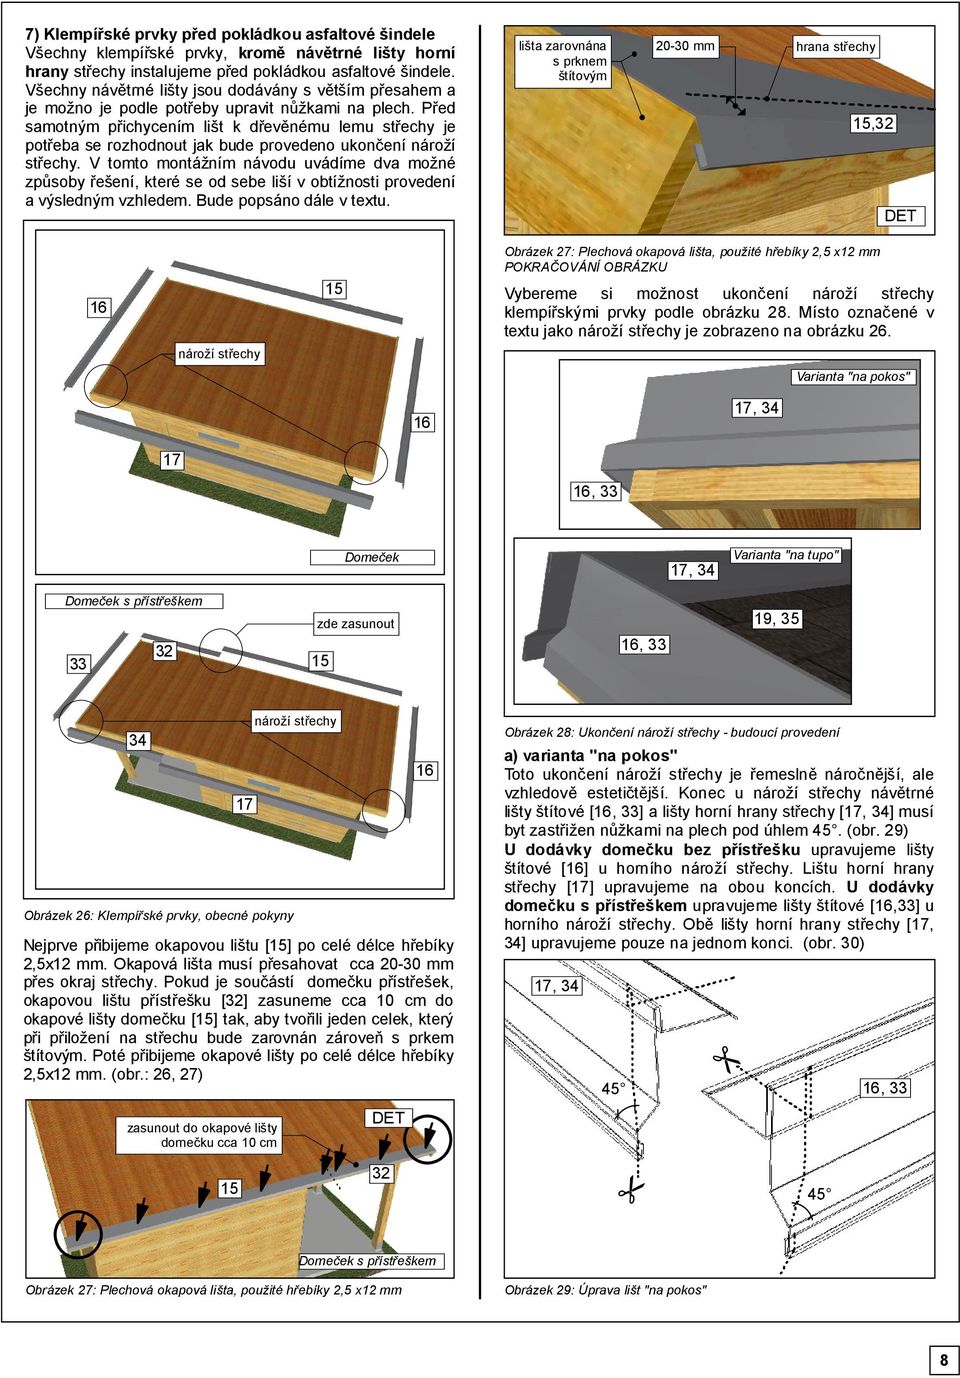 Před samotným přichycením lišt k dřevěnému lemu střechy je potřeba se rozhodnout jak bude provedeno ukončení nároží střechy.